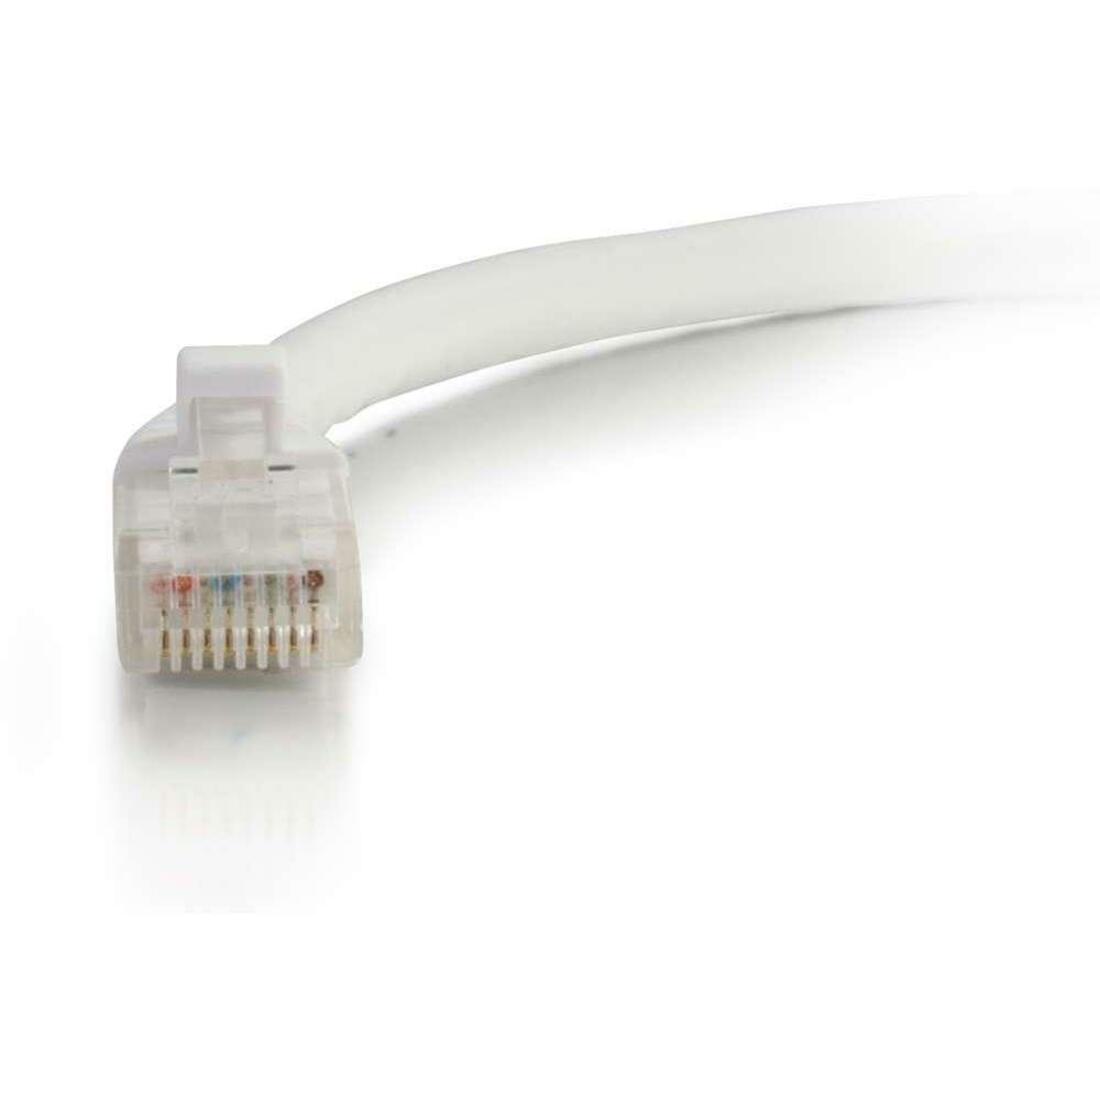 C2G 27163 10ft Cat6 Unshielded Ethernet Cable, White, Lifetime Warranty